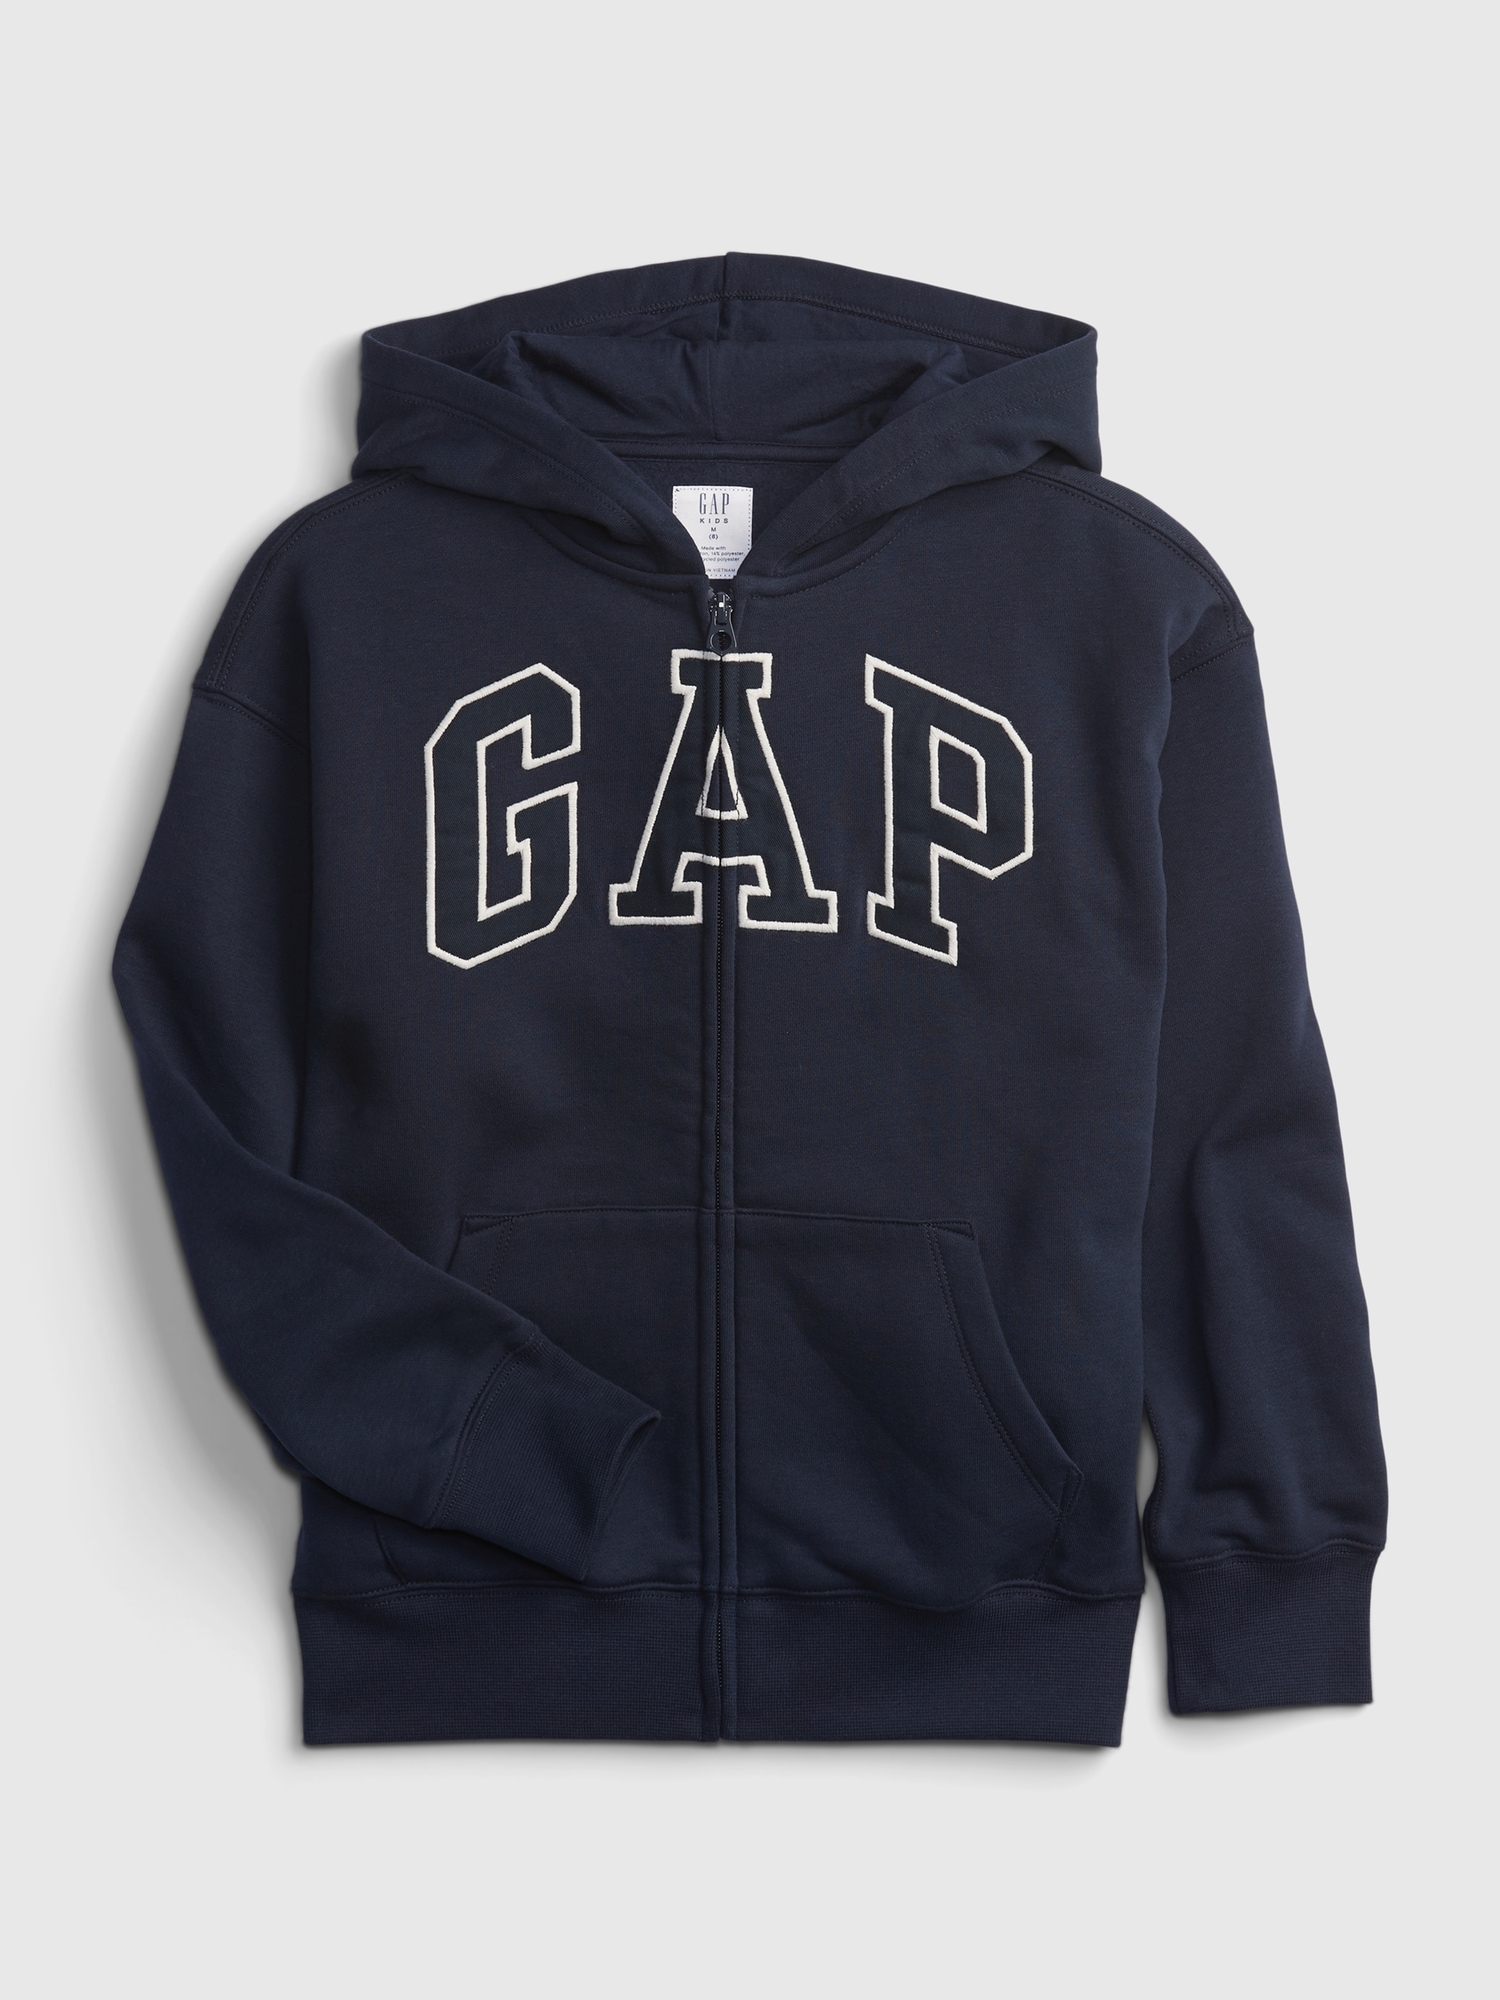 Kids Gap Logo Hoodie | Gap